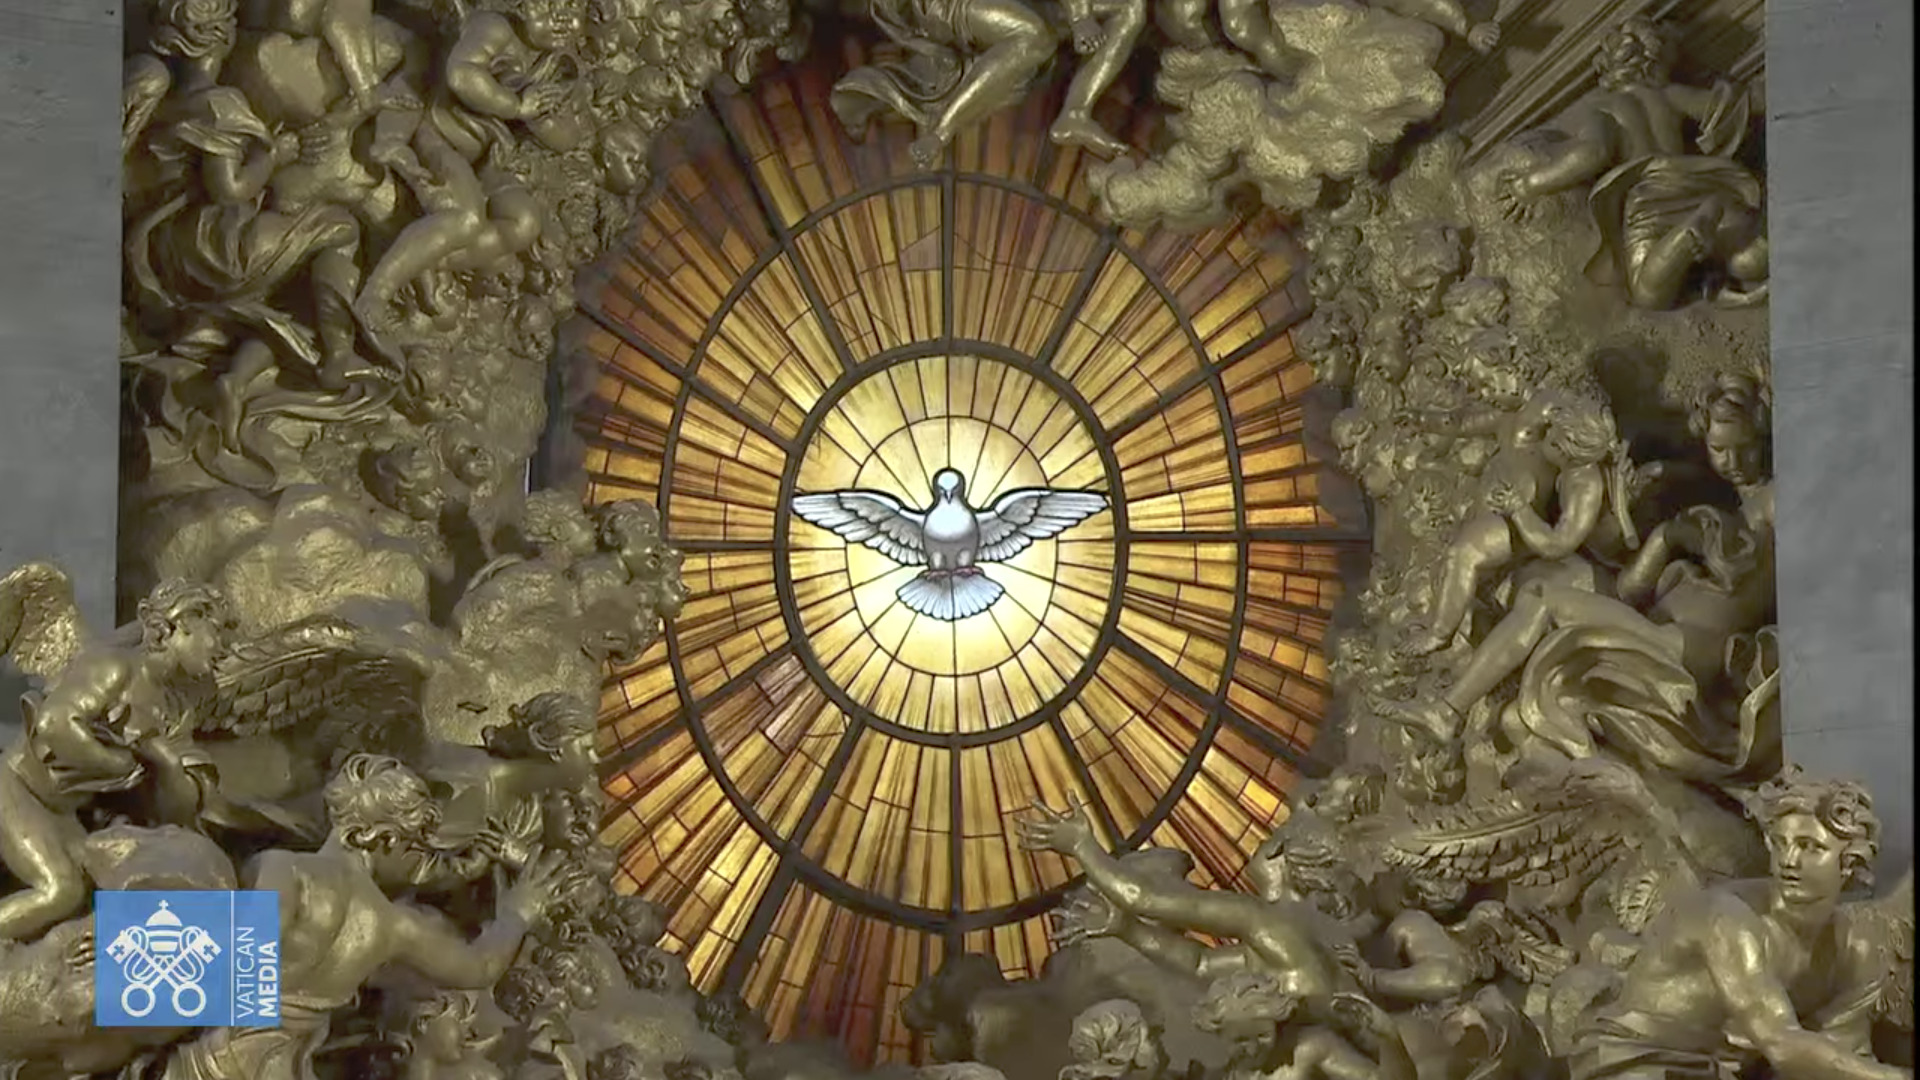 Colombe de l'Esprit Saint, "Gloire" du Bernin, basilique Saint-Pierre, capture @ Vatican Media